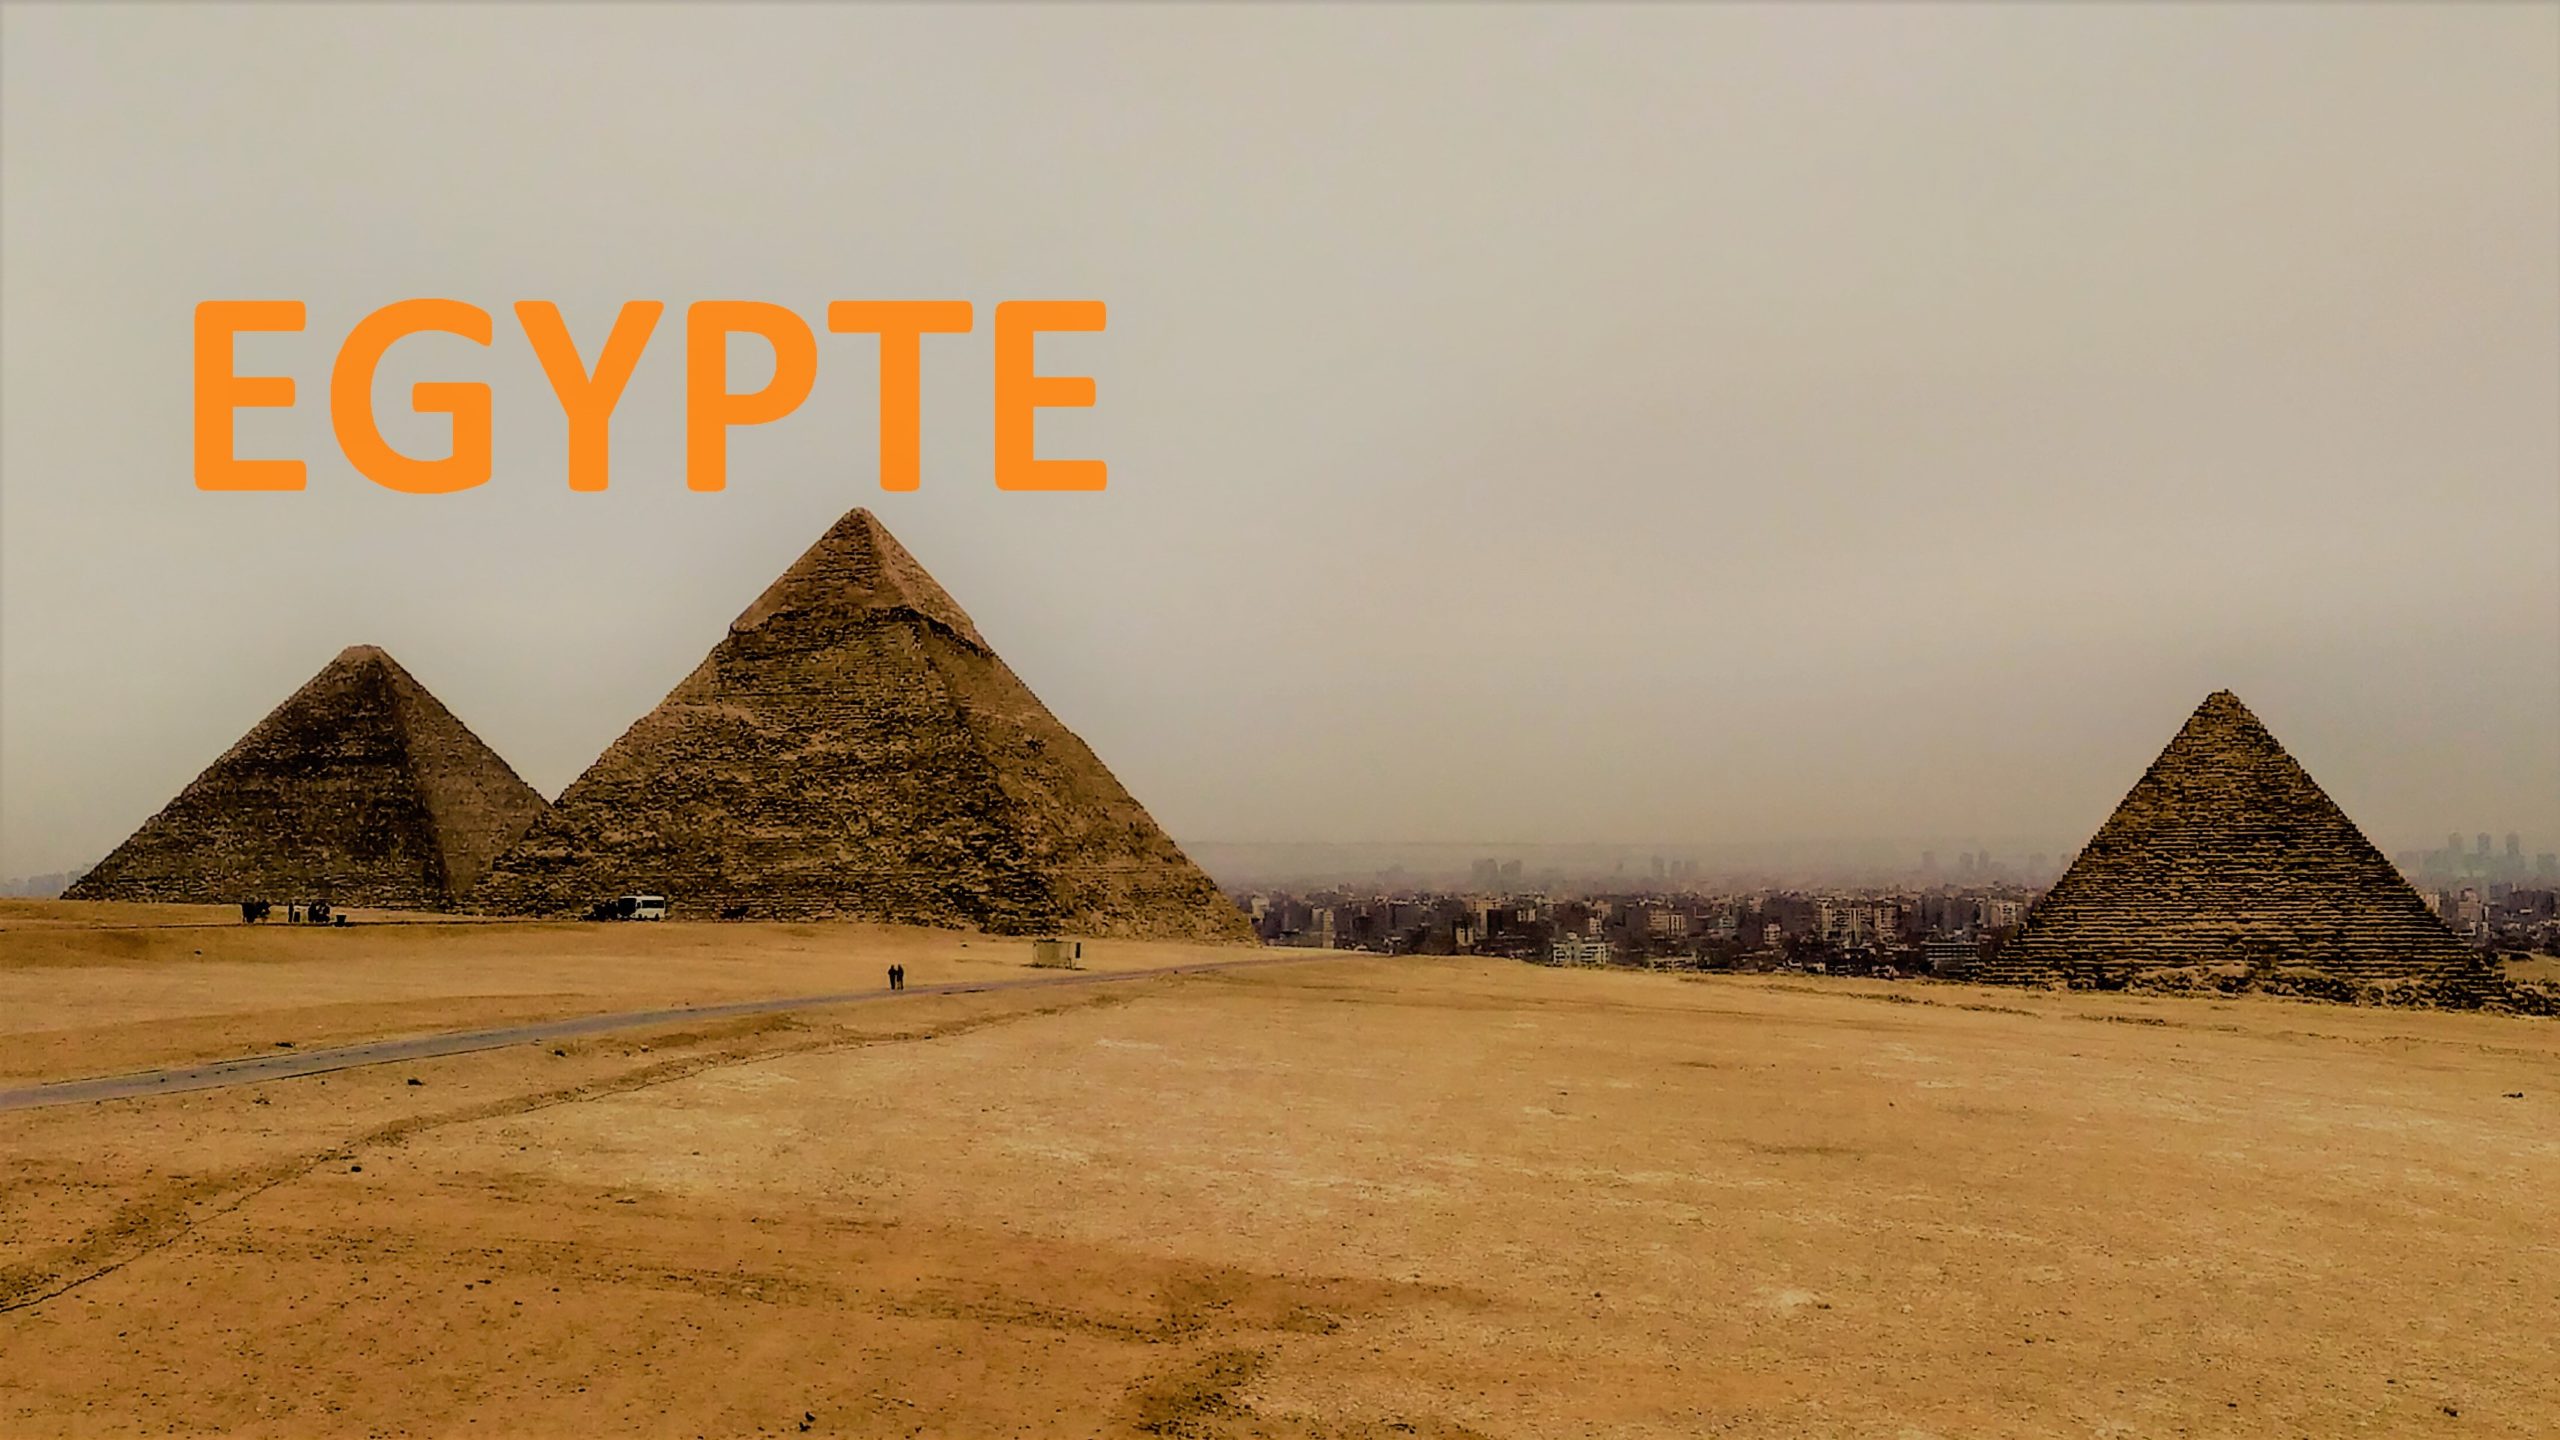 Egypte-blog-scaled.jpg